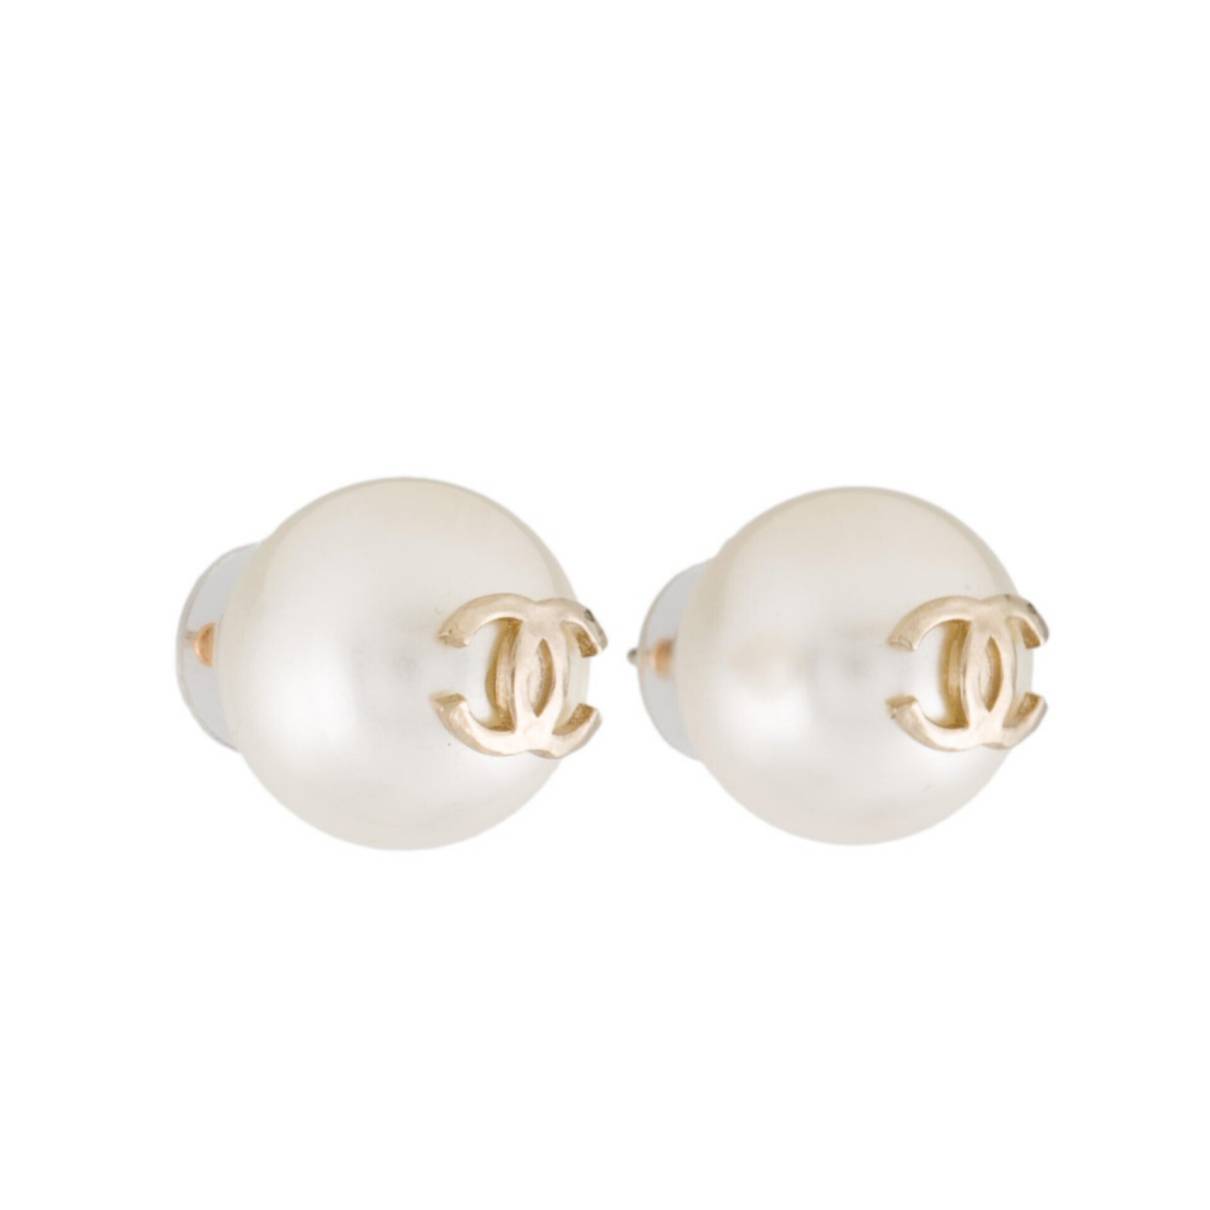 Cc earrings Chanel Gold in Metal - 37270160